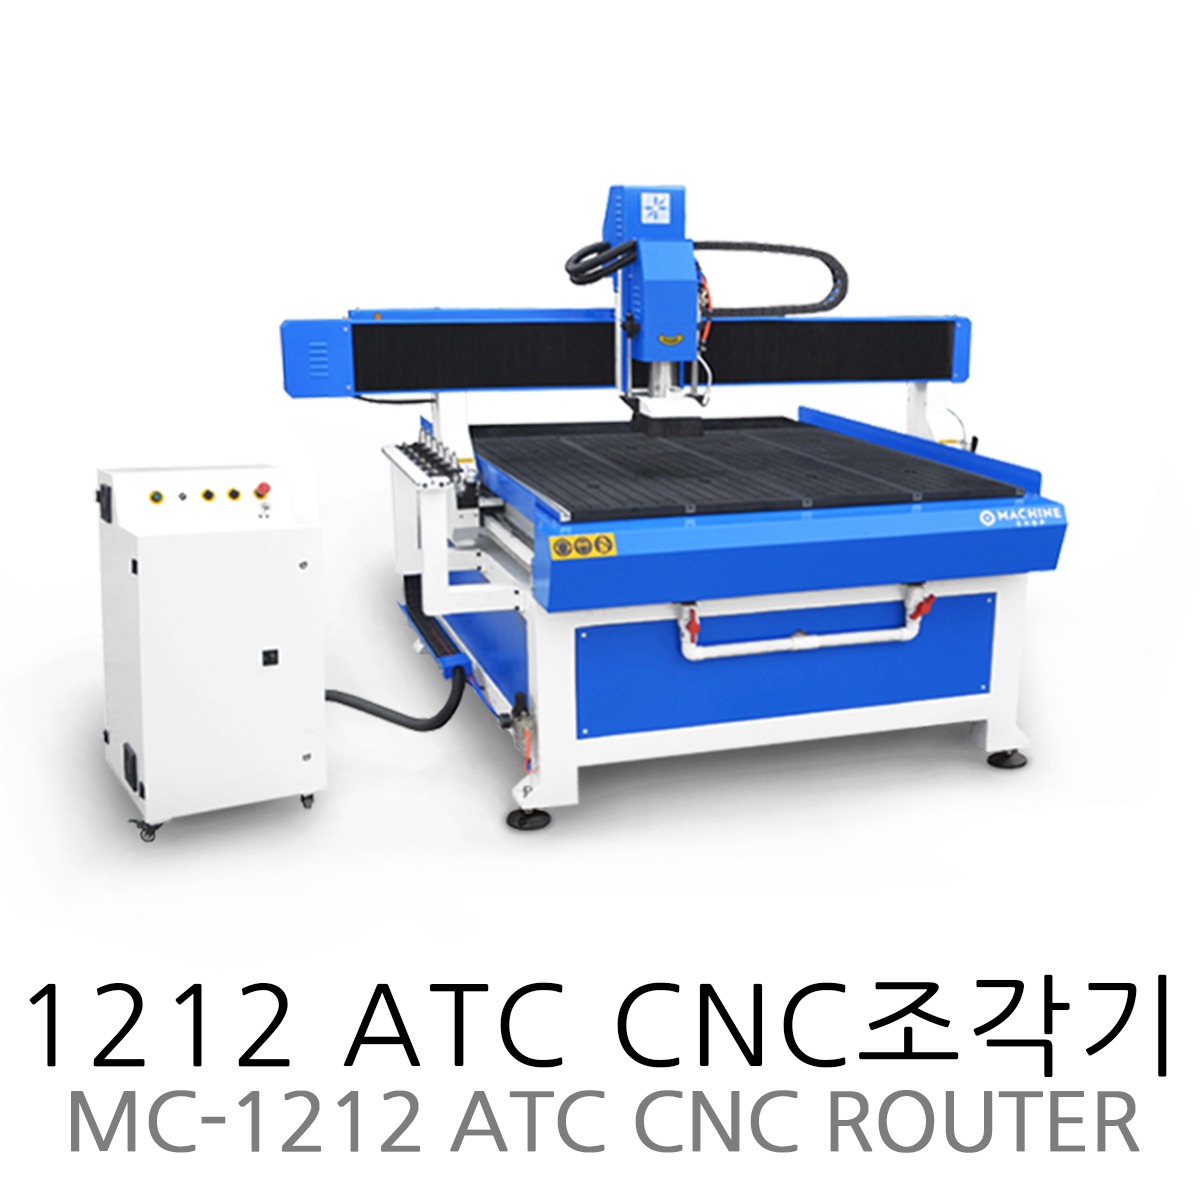 1212 ATC CNC조각기